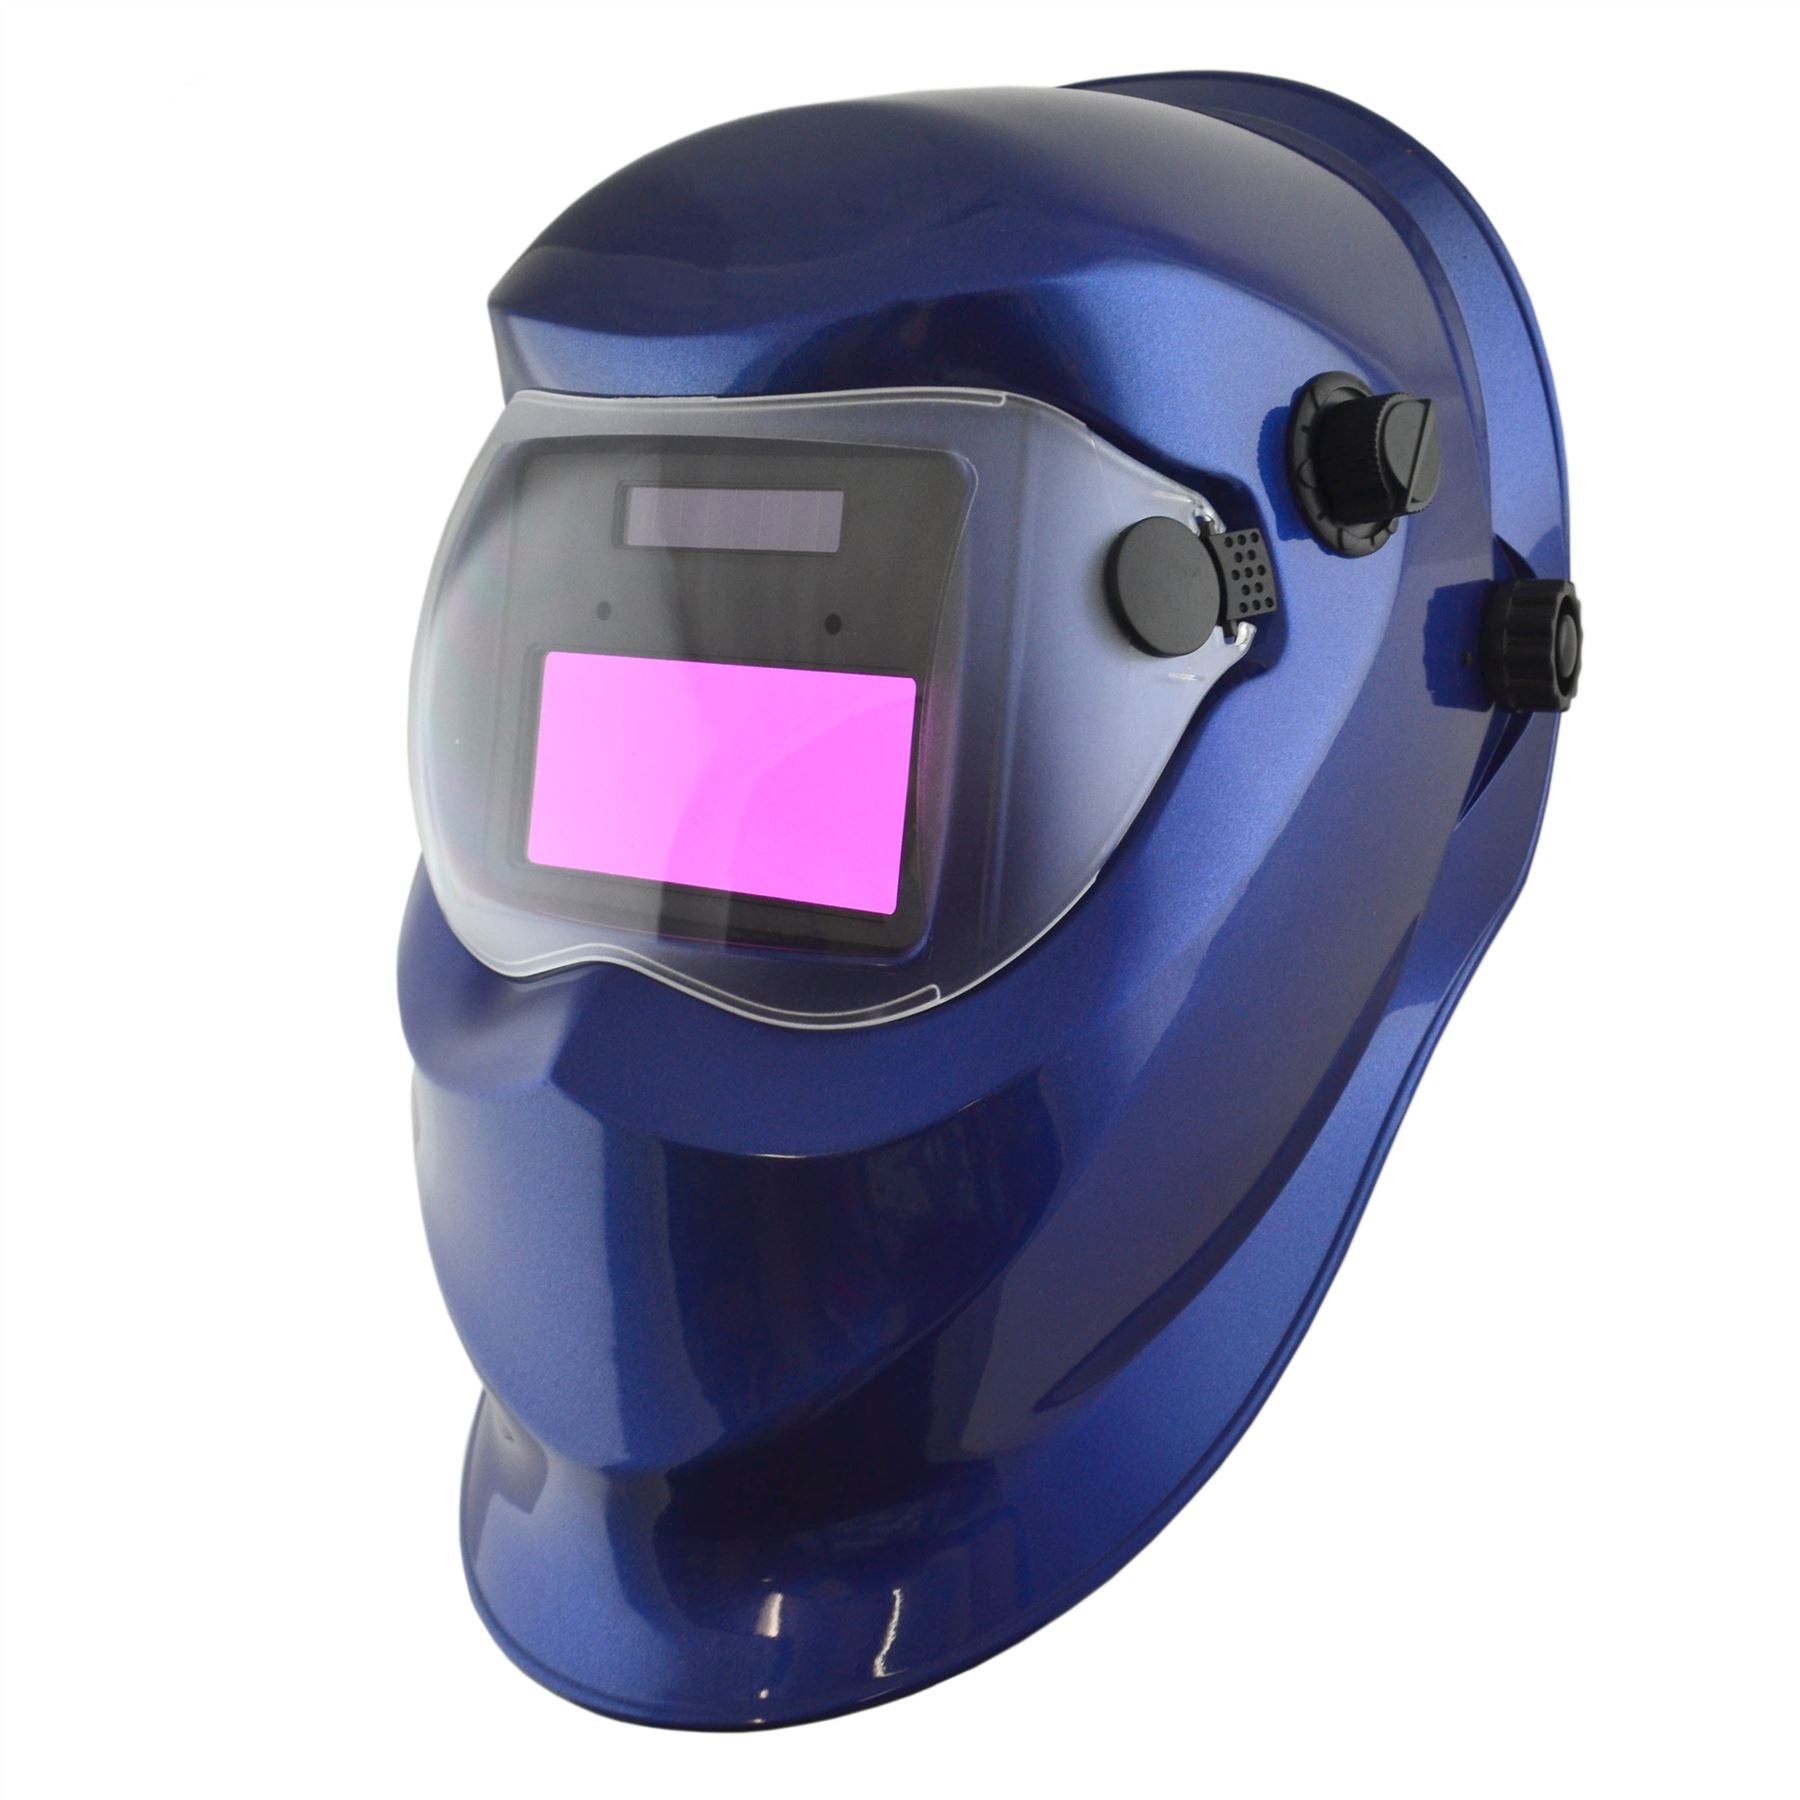 Auto Darkening Welders Helmet Mask Welding Grinding Function MIG TIG ARC TE848